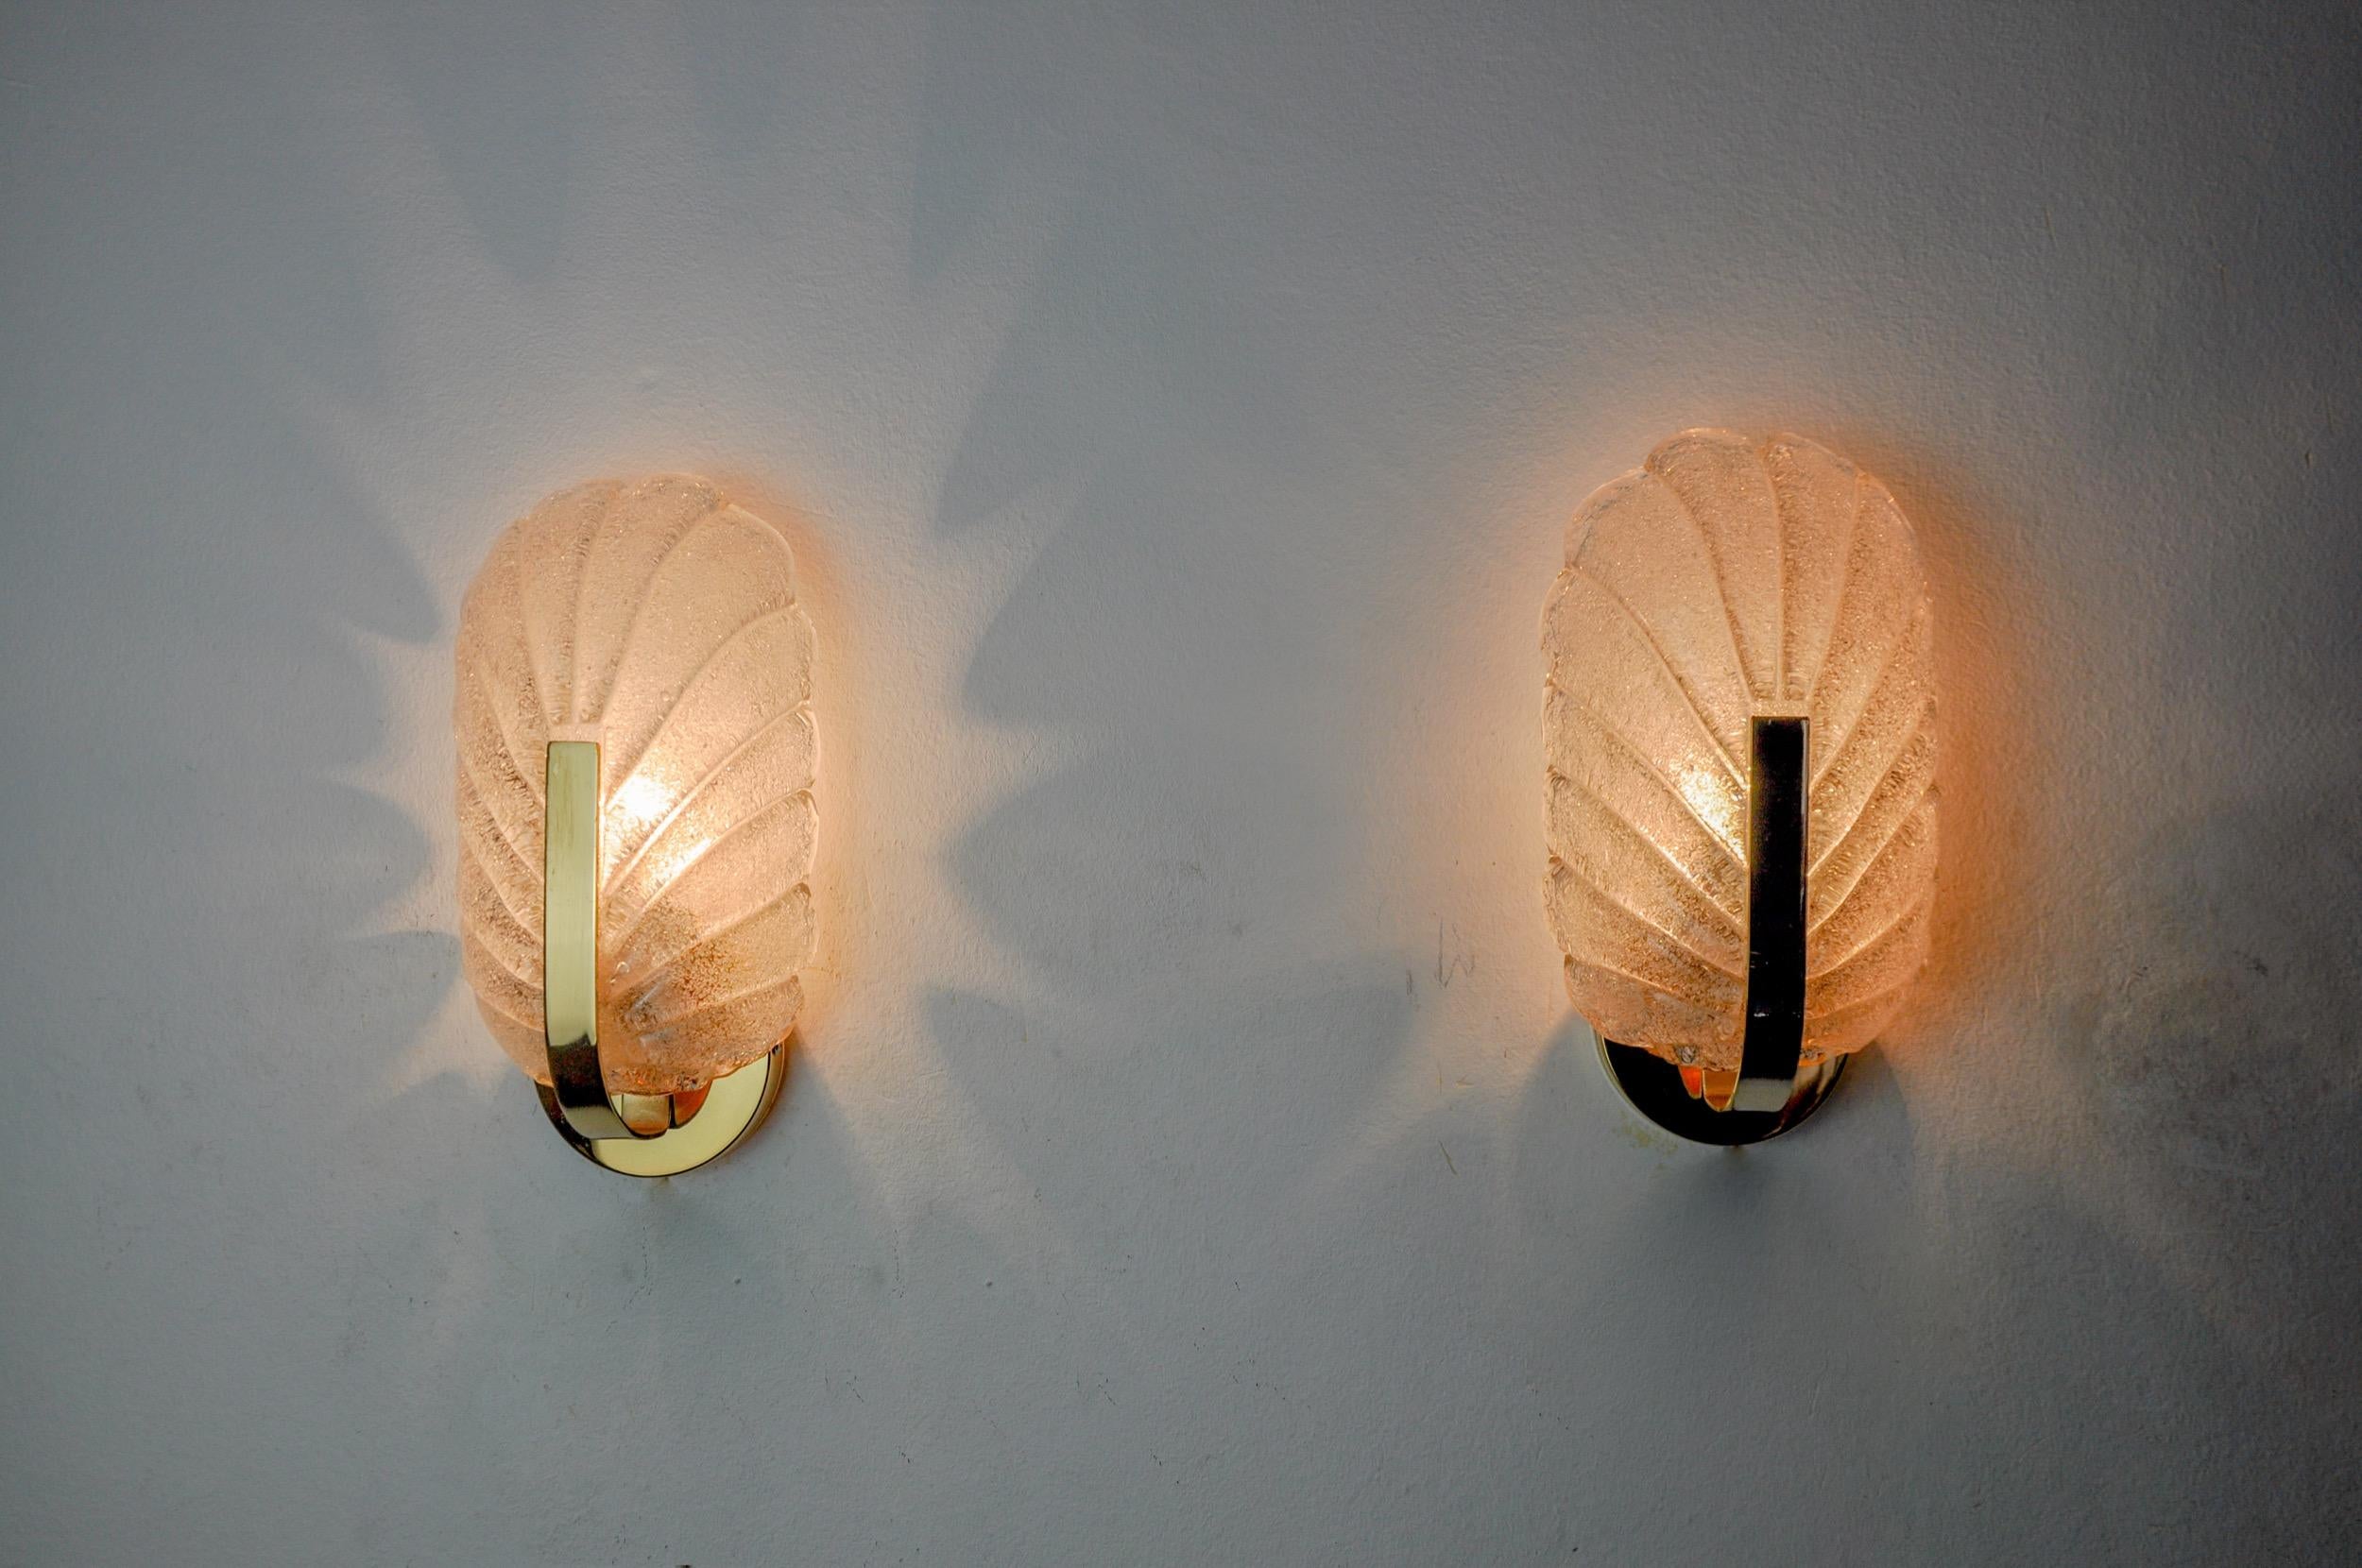 Sehr schönes Paar Blattlampen, entworfen und hergestellt in Italien in den 70er Jahren. Murano-Glaskristalle mit mattiertem Effekt in Form von Blättern und vergoldeter Metallstruktur. Einzigartiges Objekt, das wunderbar leuchtet und Ihrer